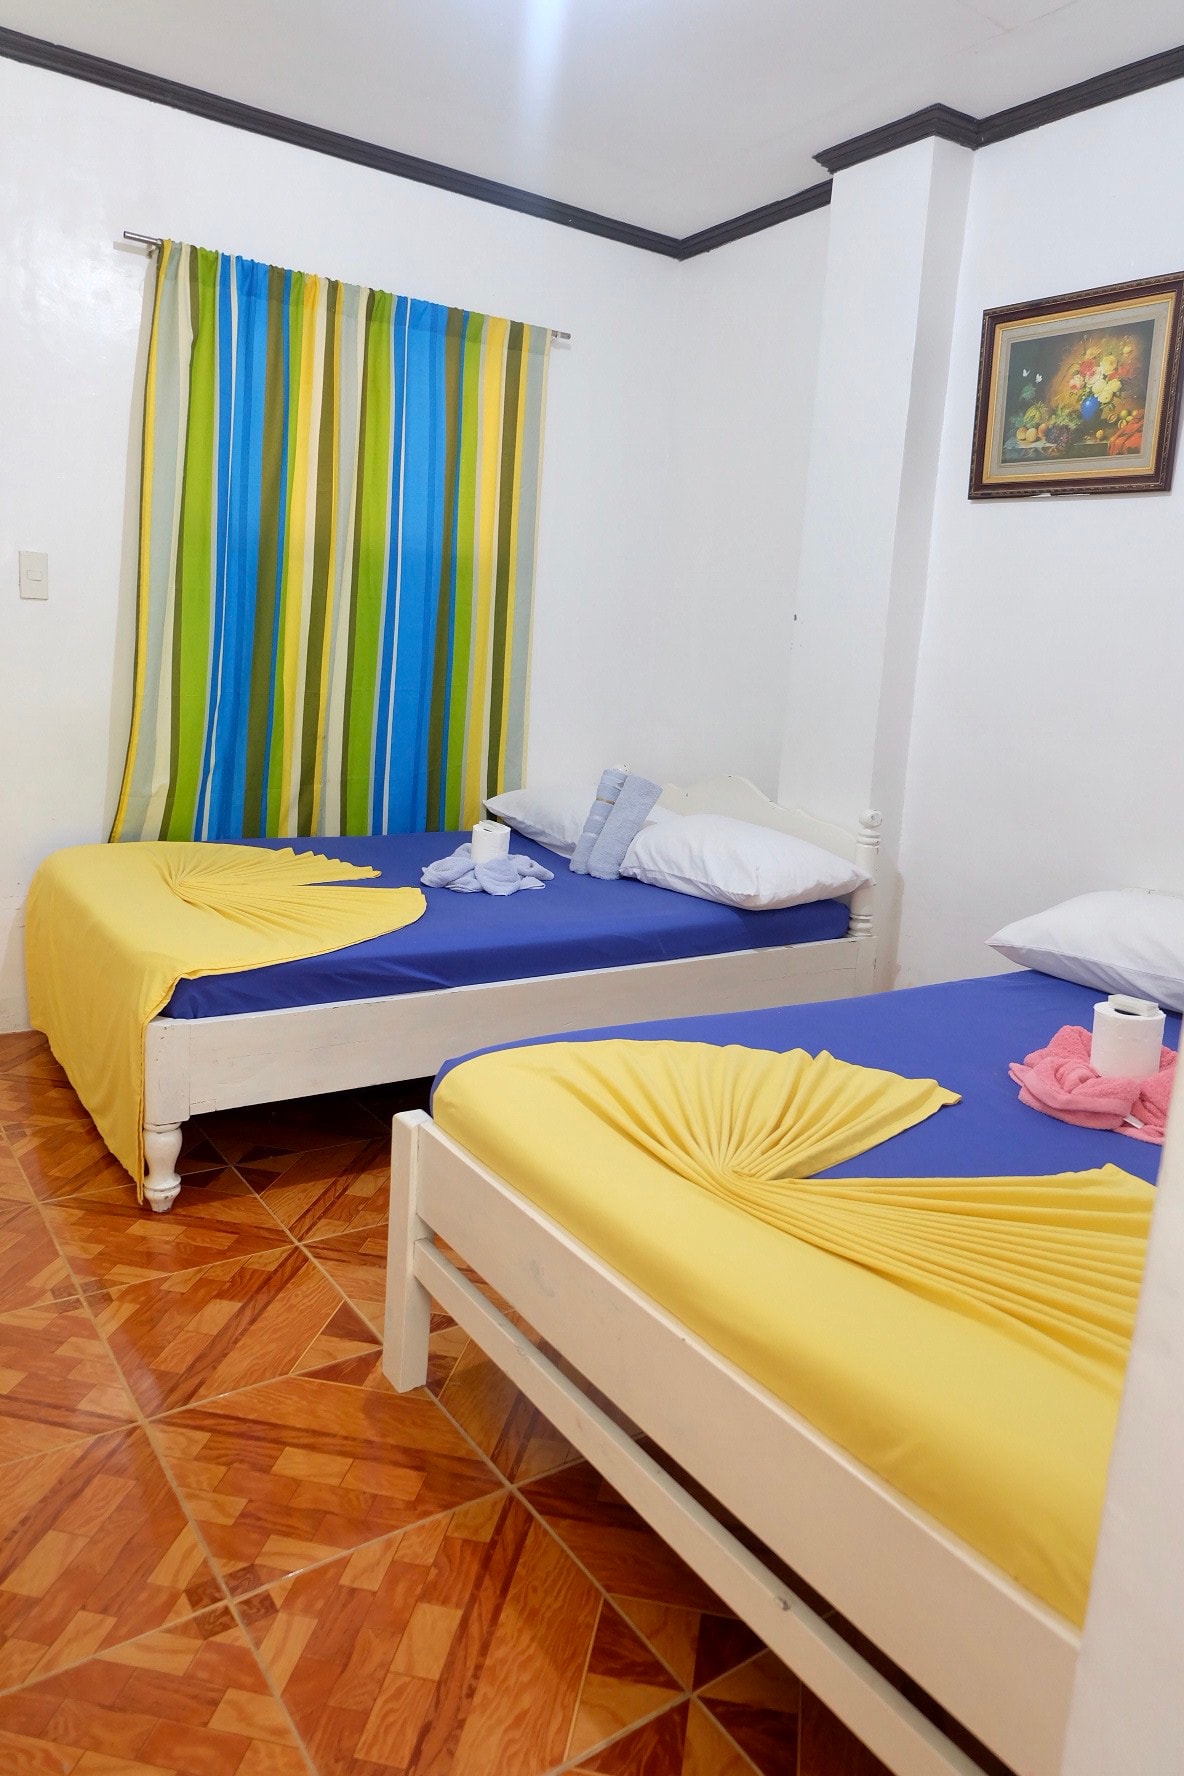 Private Room in Boracay Island